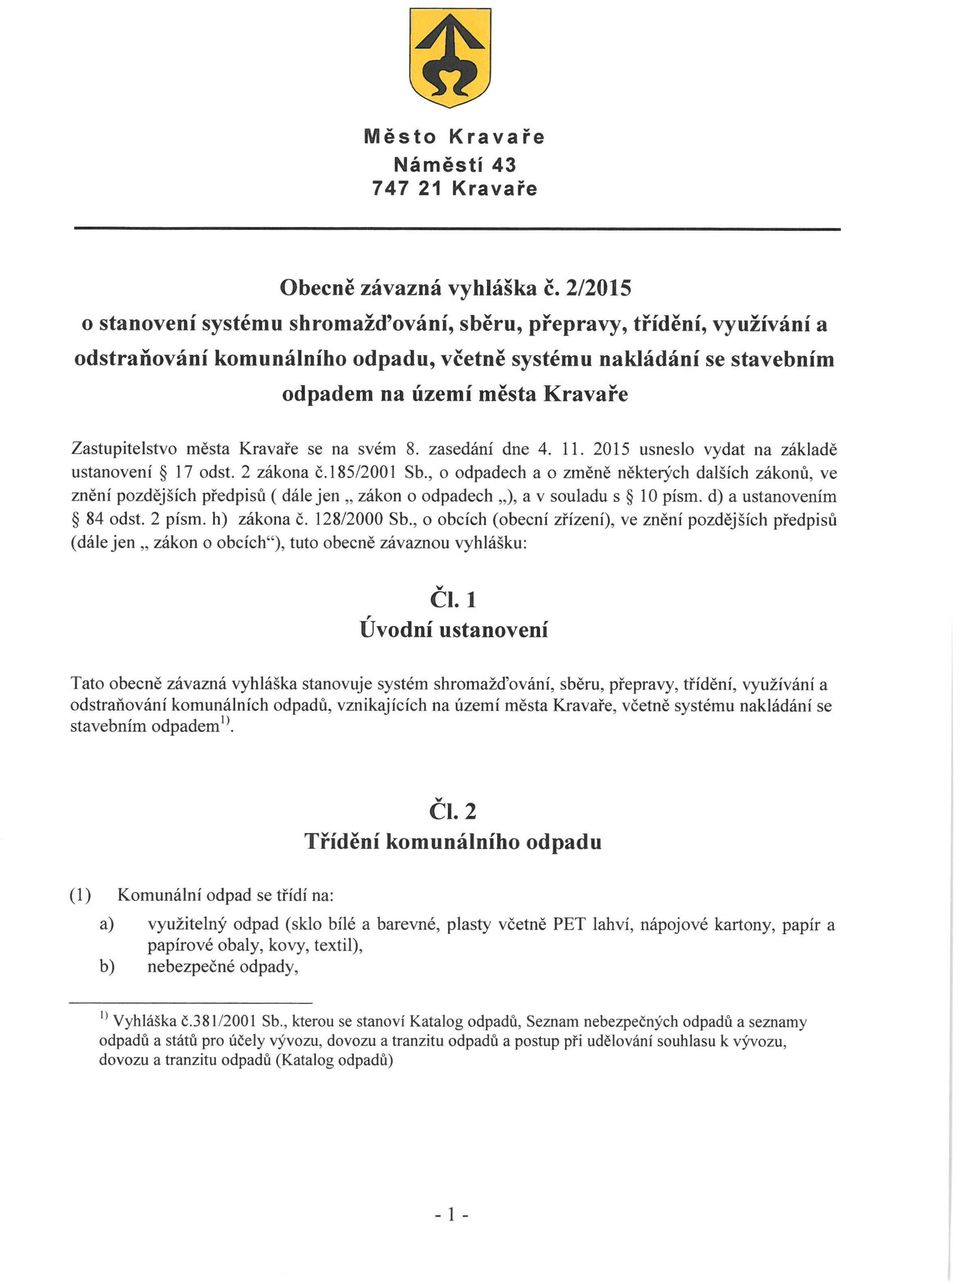 města Kravaře se na svém 8. zasedám dne 4. 11. 2015 usneslo vydat na základě ustanovení 17 odst. 2 zákona č. 185/2001 Sb.